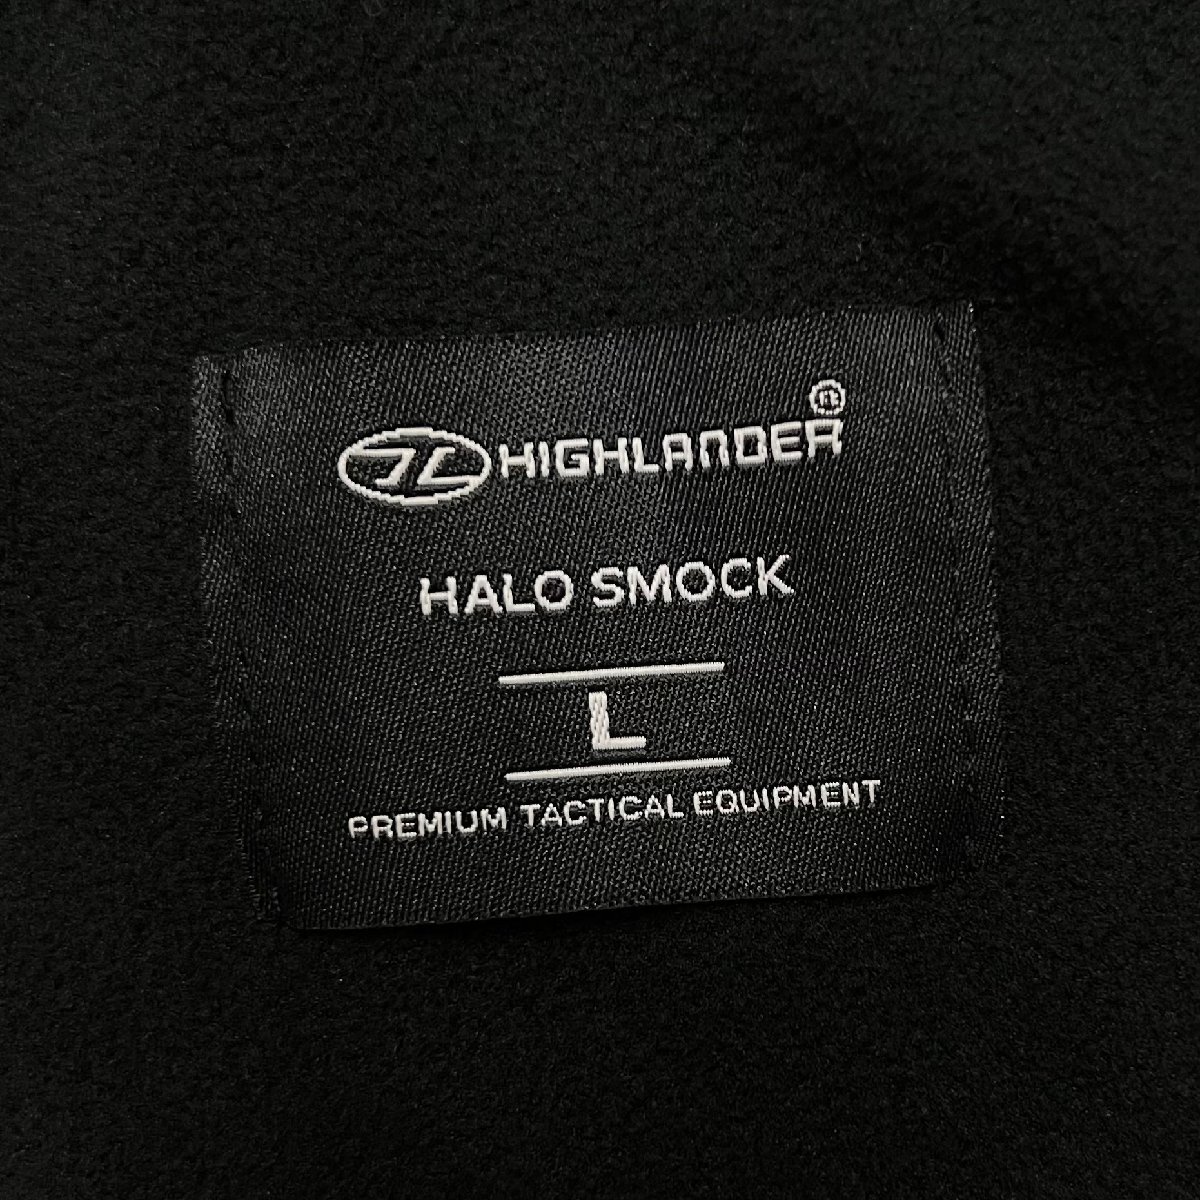 HIGHLANDER Highlander [HALO SMOCK] милитари Англия армия PCS термический рубашка нейлон подкладка флис останавливаться вода Zip L чёрный / черный 